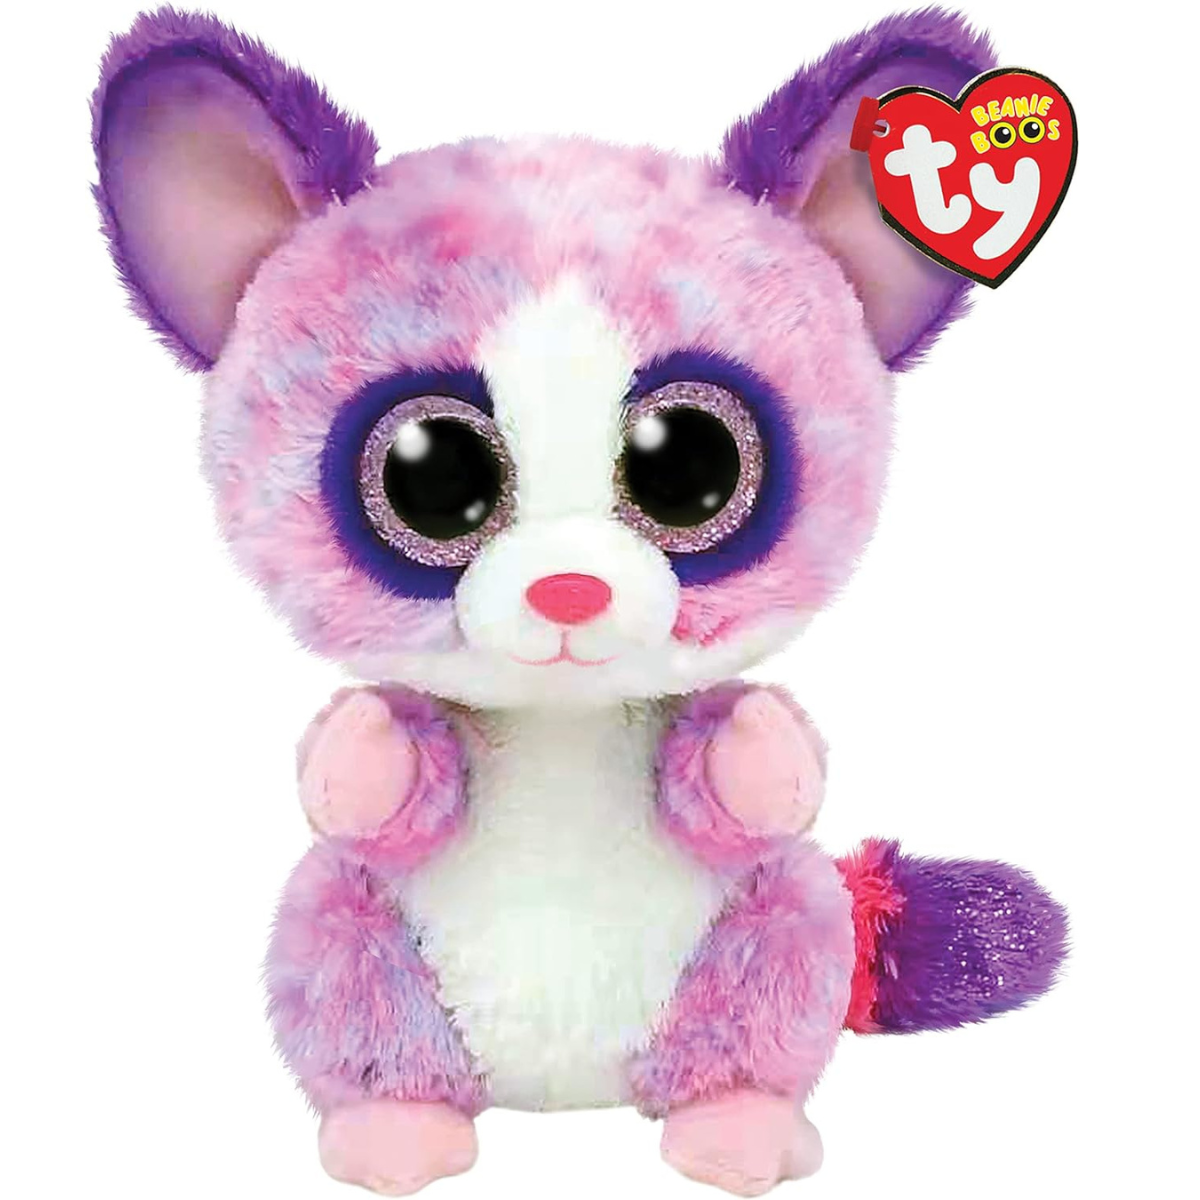 Ty - peluche - beanie boos - galago scimmia - becca - rosa e viola - orsetto con occhioni glitter rosa - il morbido pupazzo con gli occhi grandi scintillanti - 15 cm - 36395 - TY